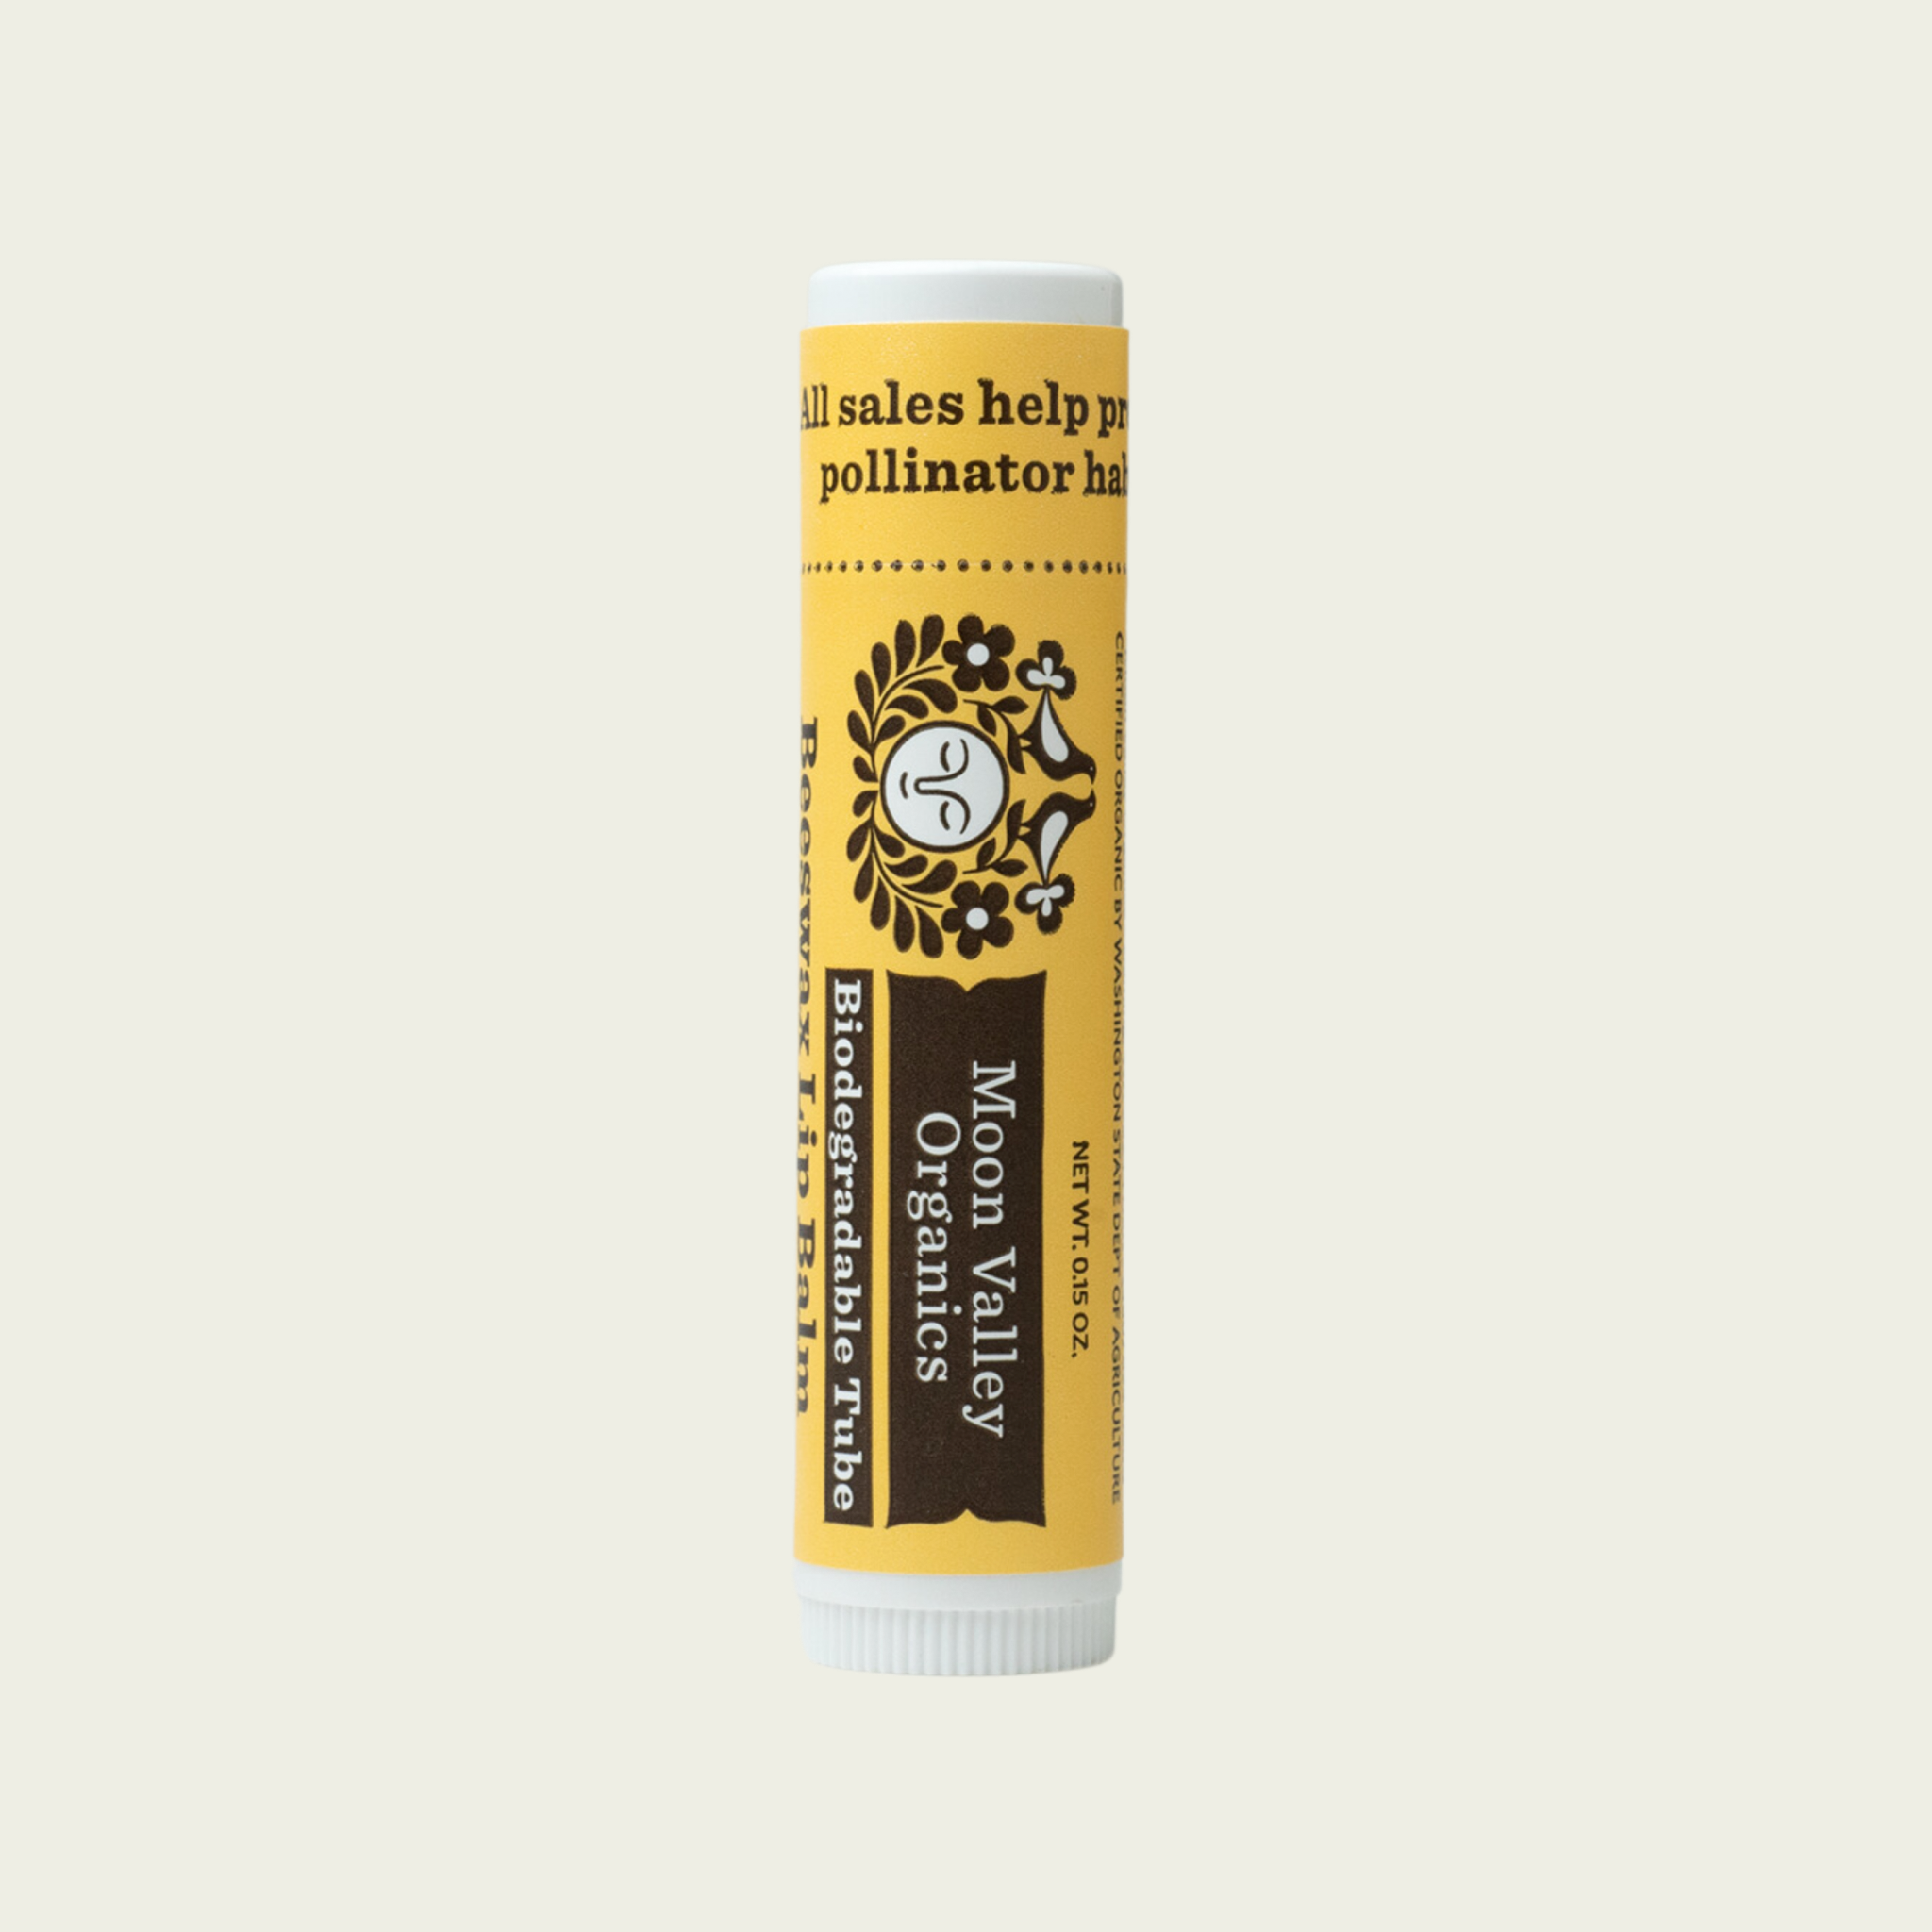 Beeswax Lip Balm – Santa Ana River Valley Honey Company